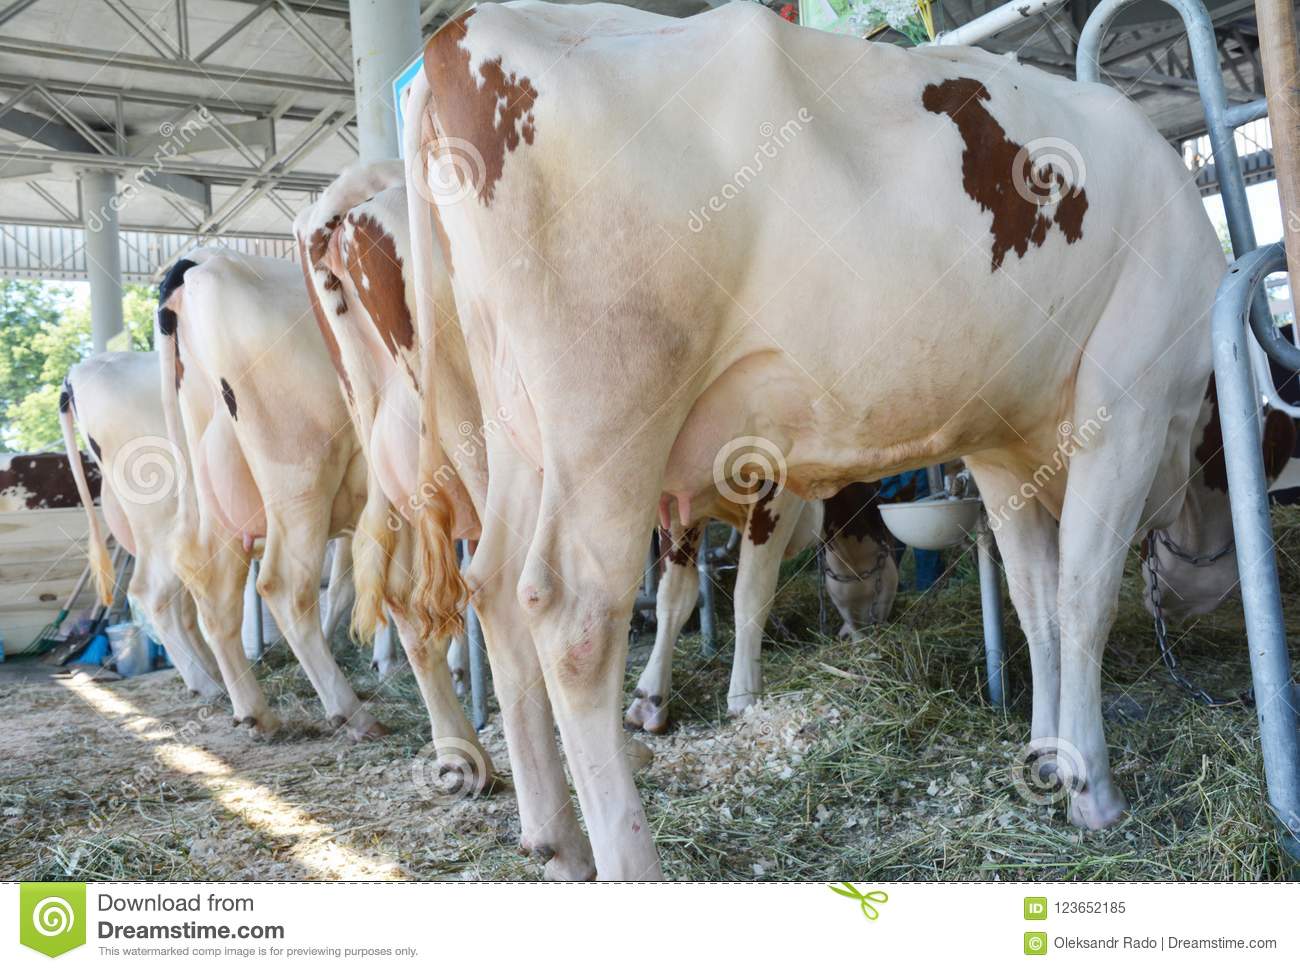 Лечение папилломатоза крупного рогатого скота в условиях личного подсобного хозяйства